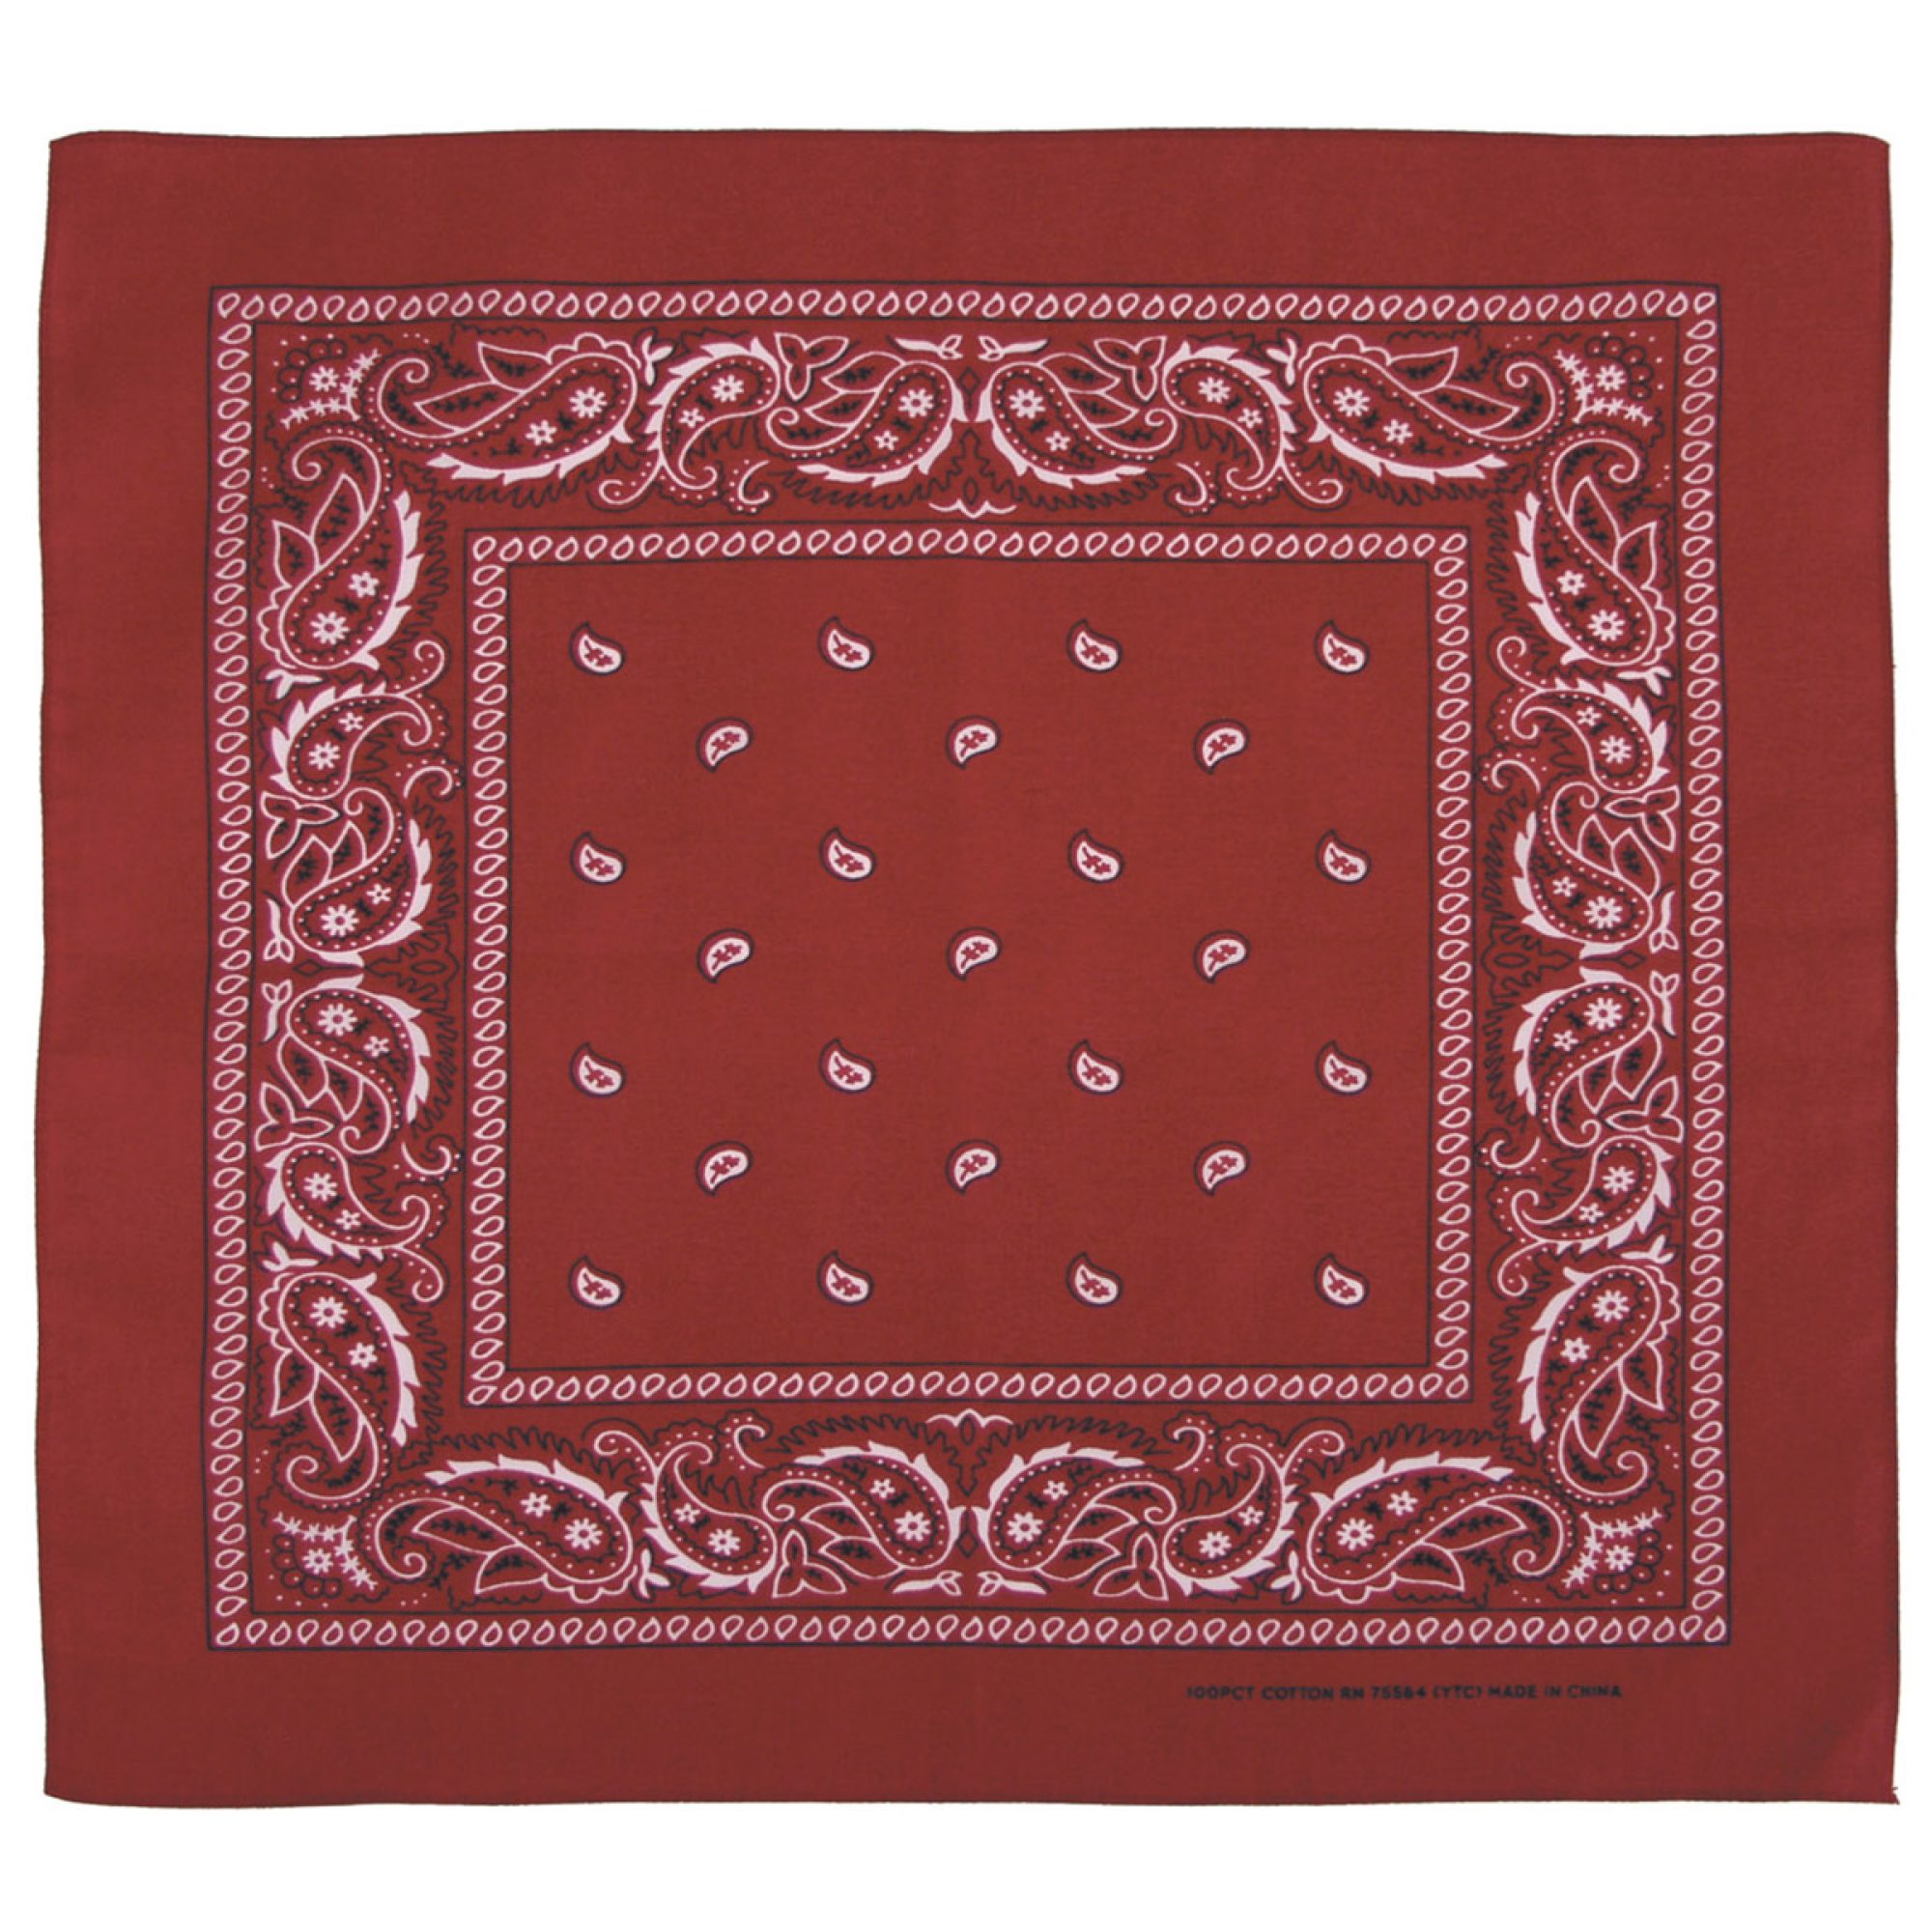 ABVERKAUF – Bandana,  burgund-schwarz, ca. 55 x 55 cm,  Baumwolle